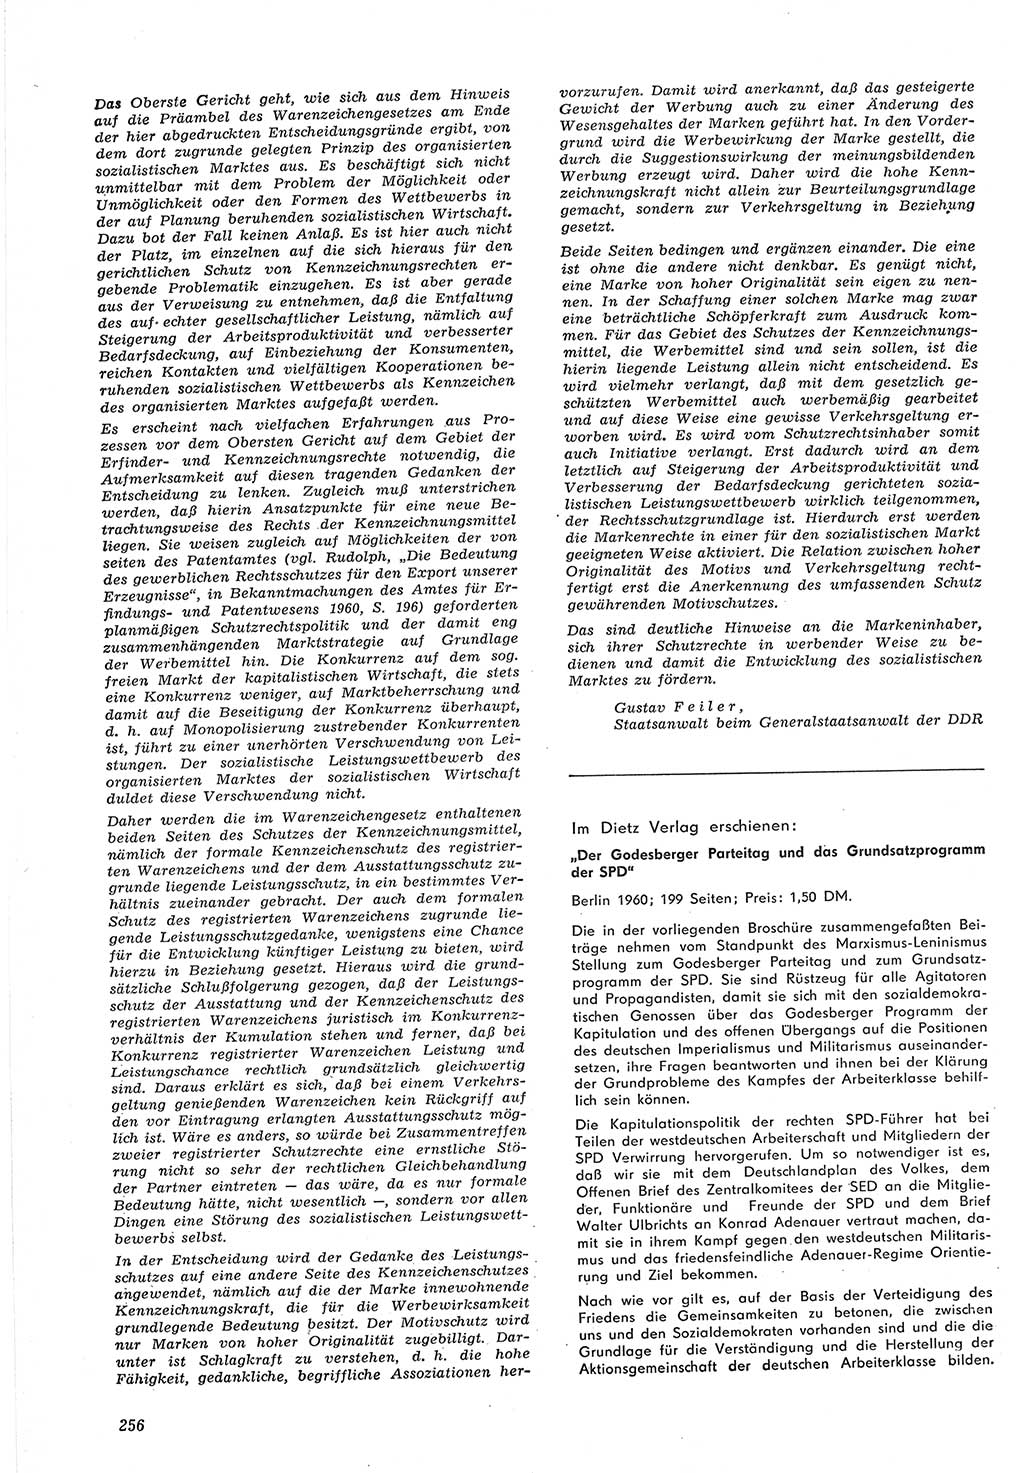 Neue Justiz (NJ), Zeitschrift für Recht und Rechtswissenschaft [Deutsche Demokratische Republik (DDR)], 15. Jahrgang 1961, Seite 256 (NJ DDR 1961, S. 256)